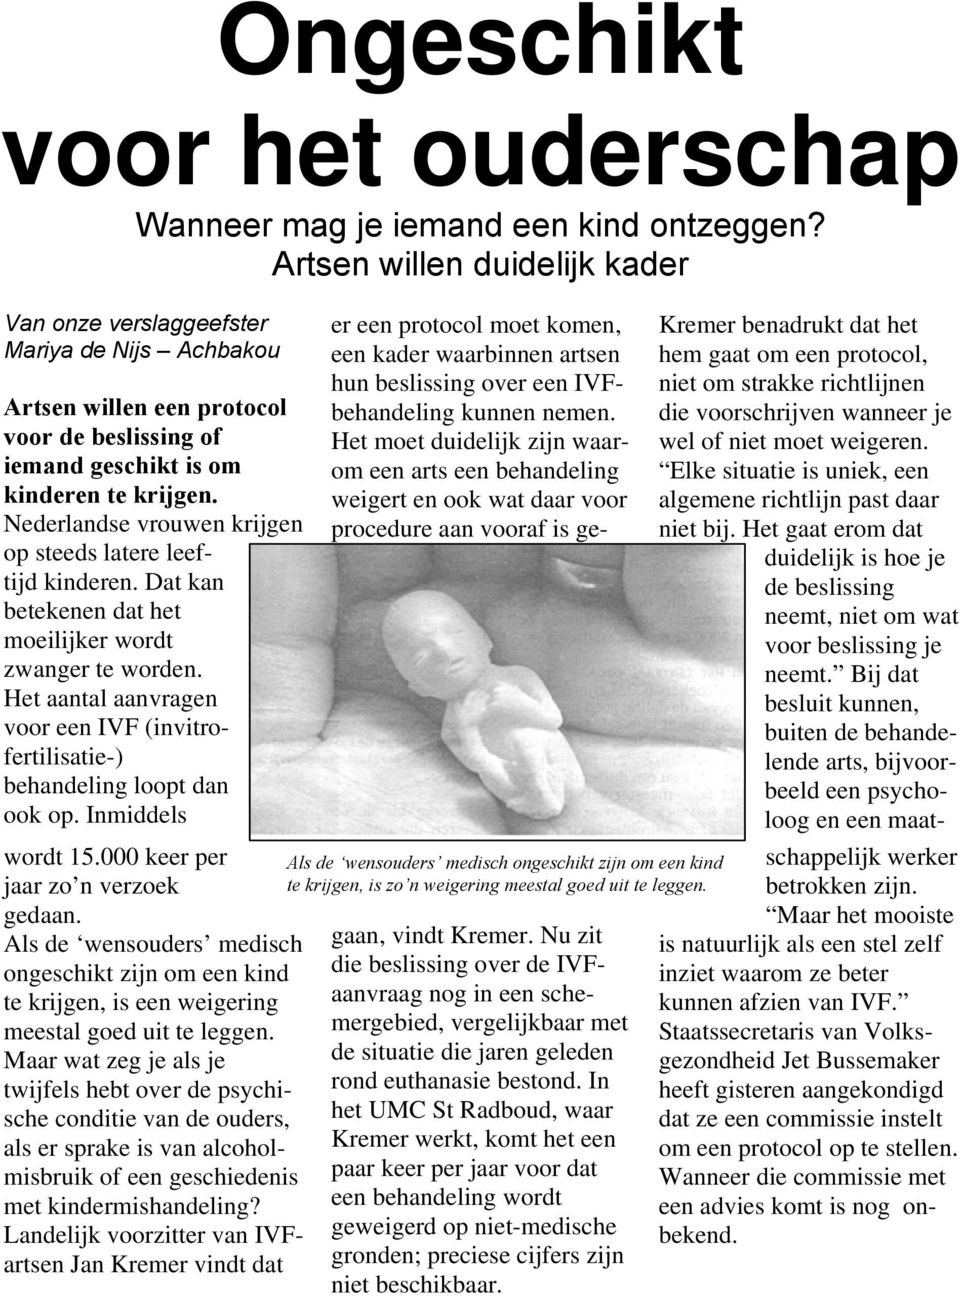 Nederlandse vrouwen krijgen op steeds latere leeftijd kinderen. Dat kan betekenen dat het moeilijker wordt zwanger te worden.